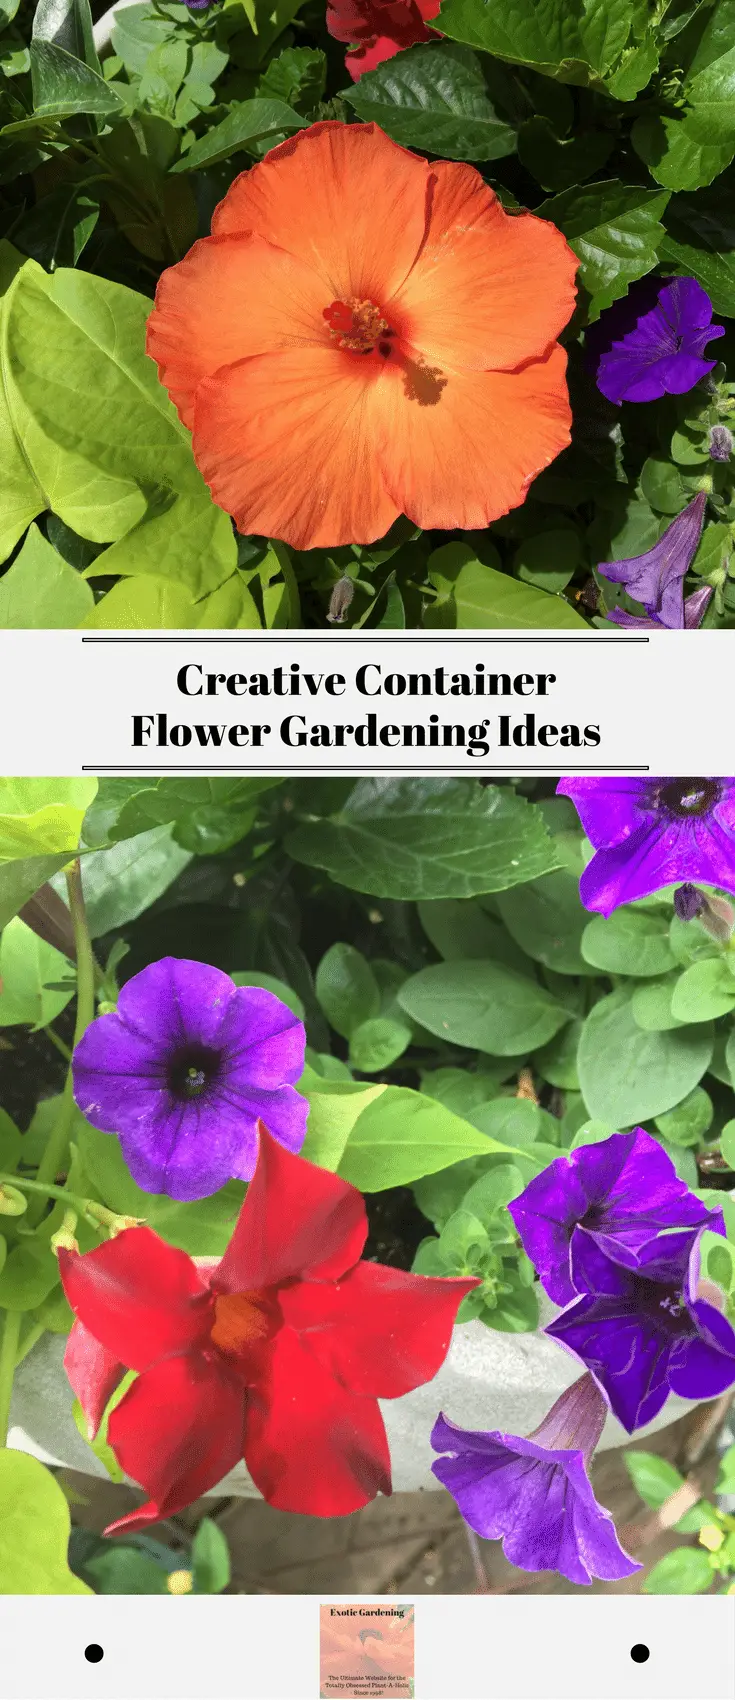 Creative Container Flower Gardening Ideas